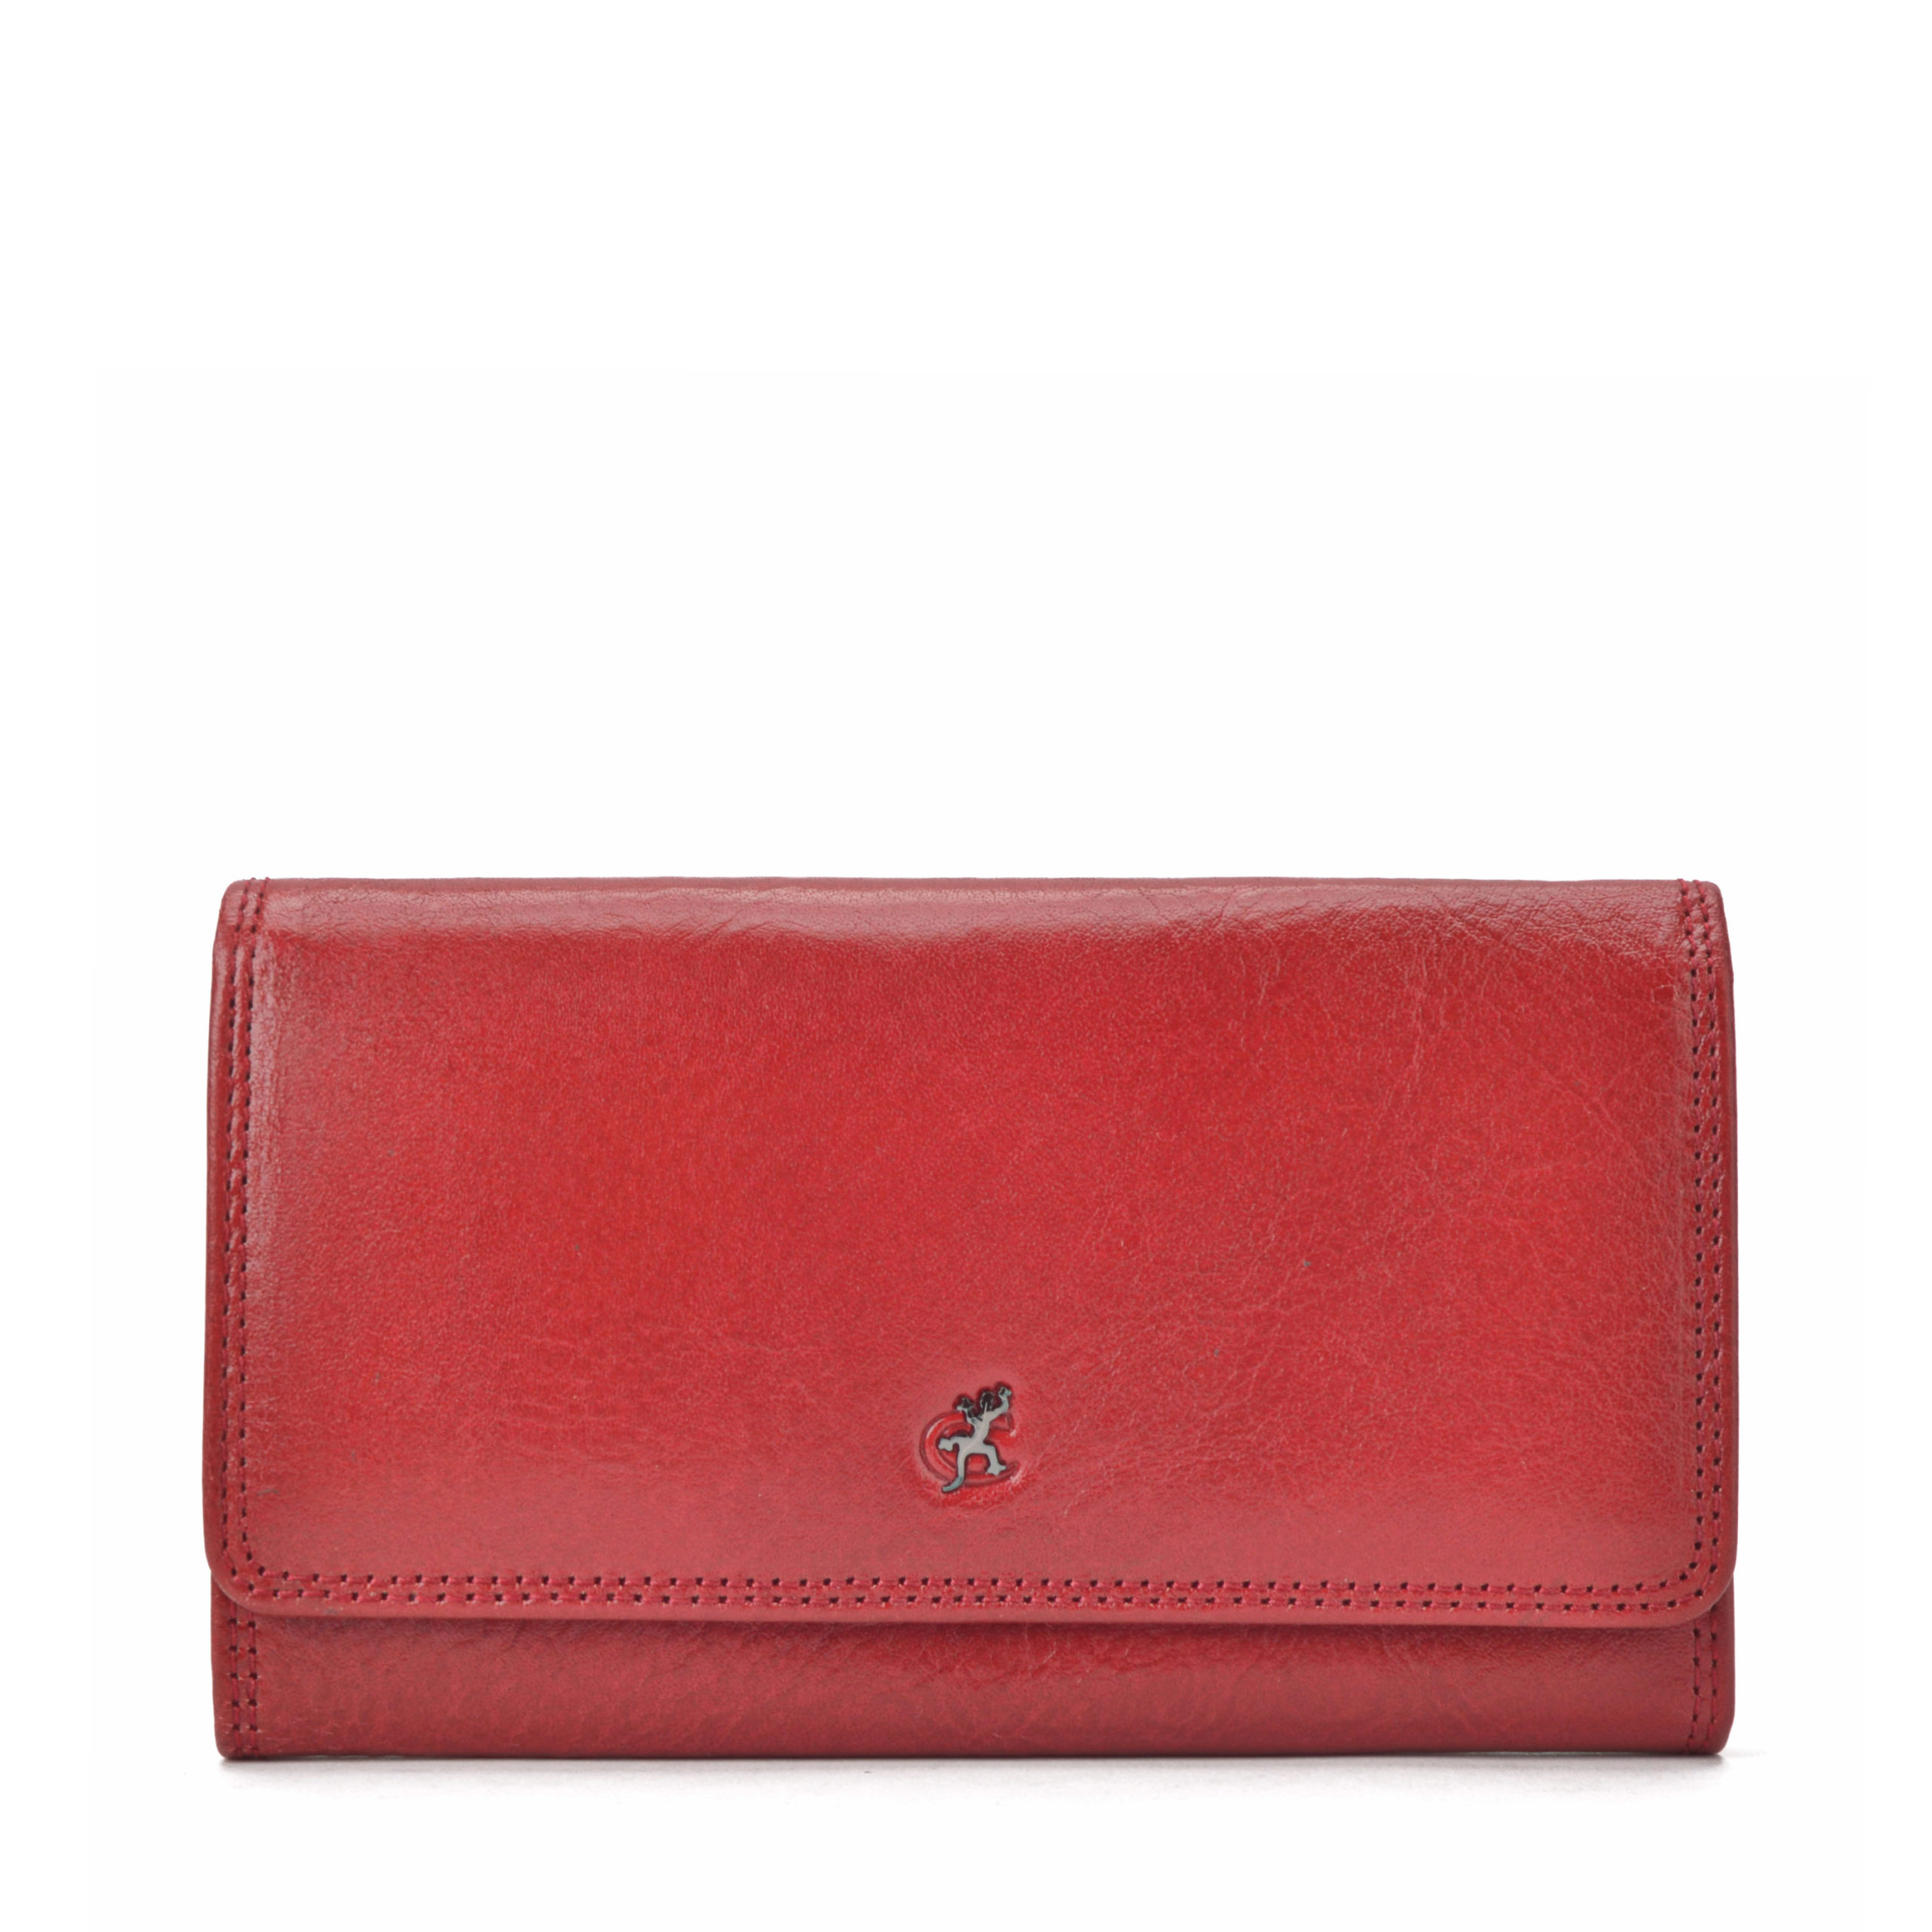 Červená dámská kožená peněženka Cosset Komodo 4427